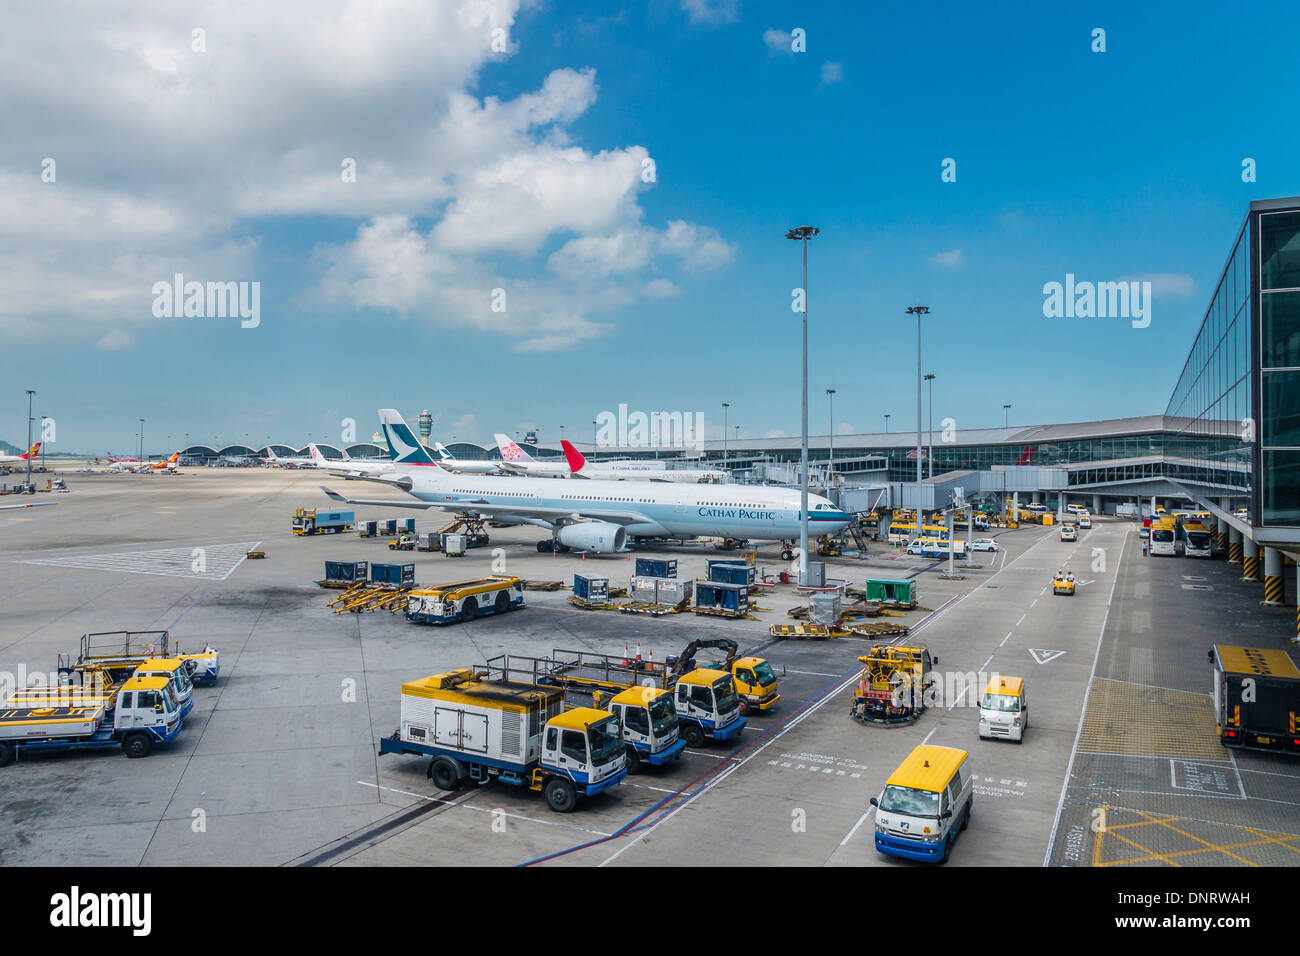 View of Parking Apron, Hong Kong International Airport, Hong Kong Stock Photo